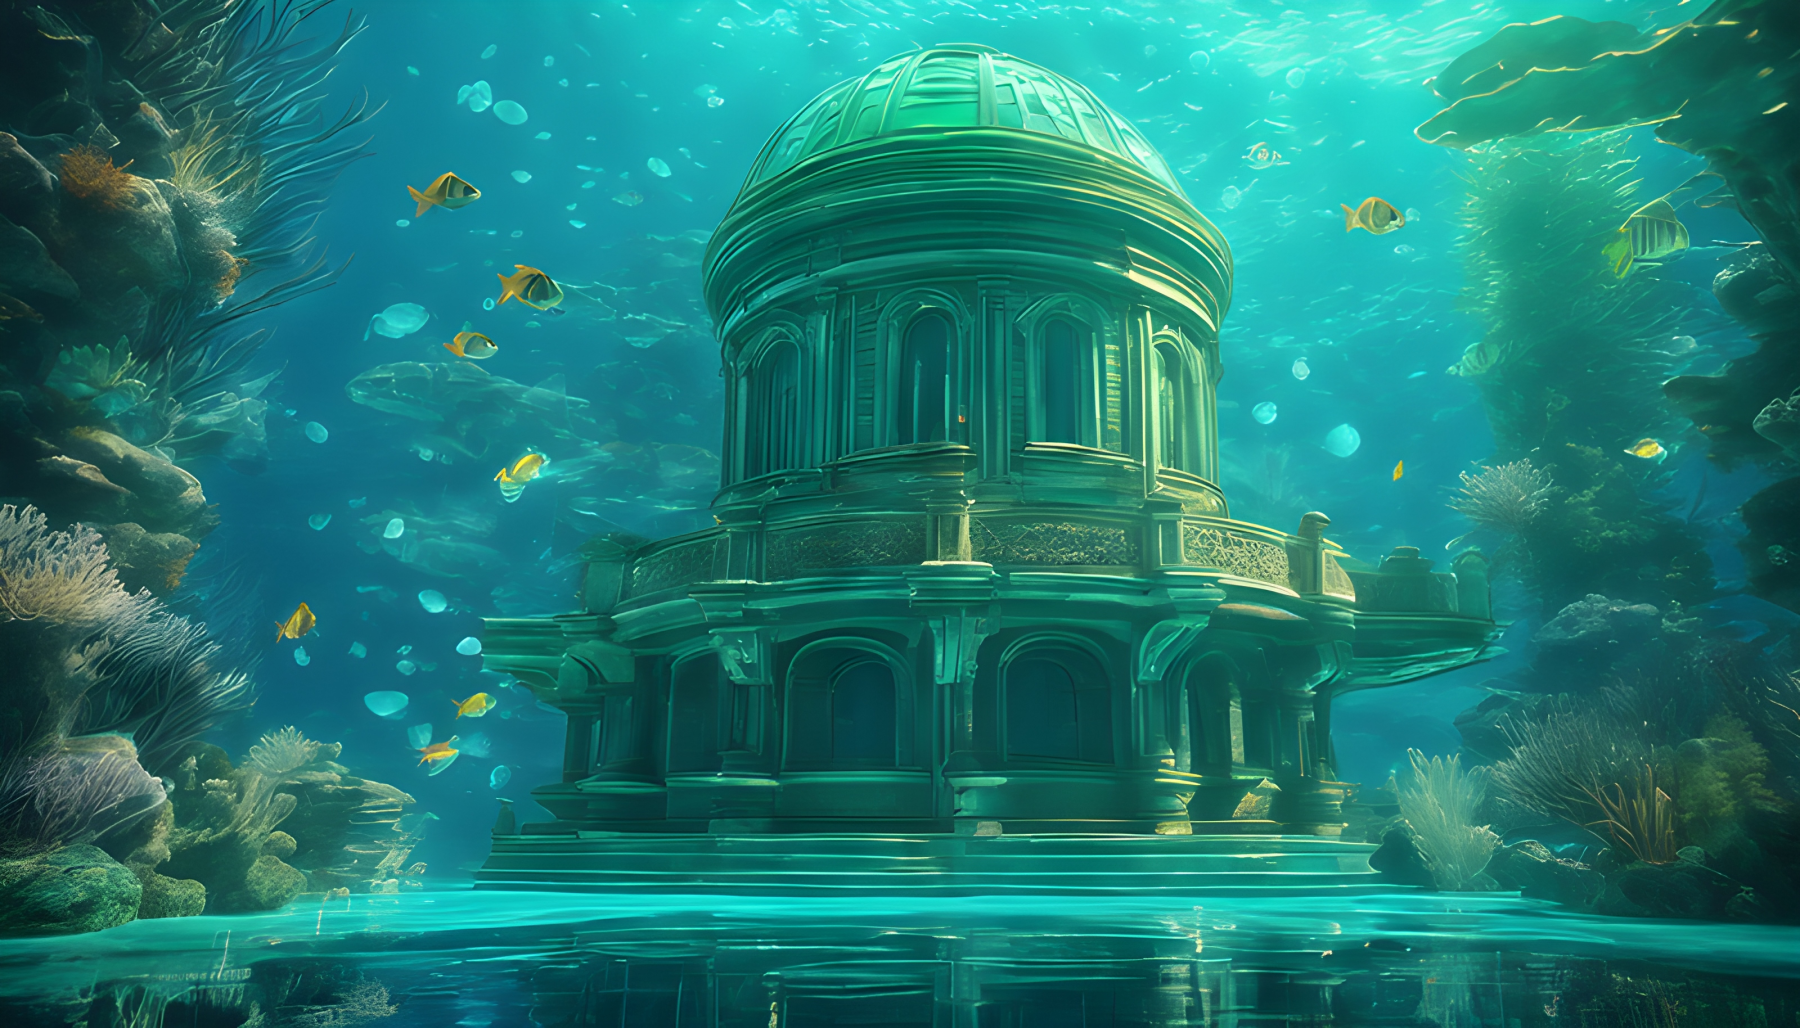 สร้างภาพฉากใต้น้ำ 3 มิติที่น่าหลงใหลซึ่งนำเสนอความมหัศจรรย์ทางสถาปัตยกรรมที่แตกต่างจากโลกอื่น